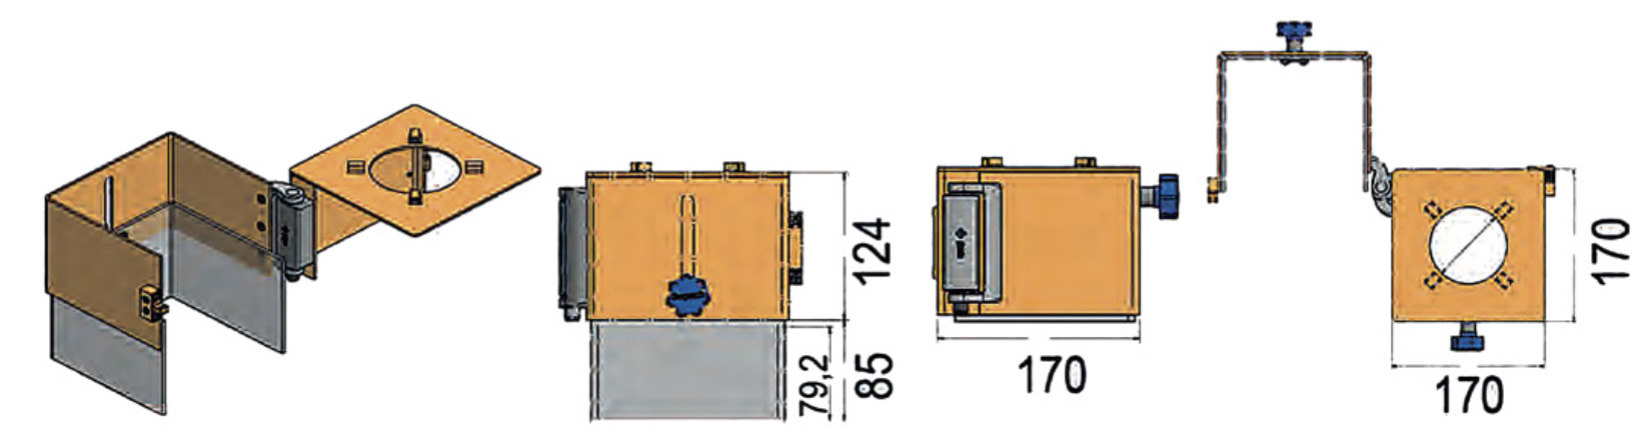 Dettaglio schermo di protezione per trapano a colonna LTF 147.CM